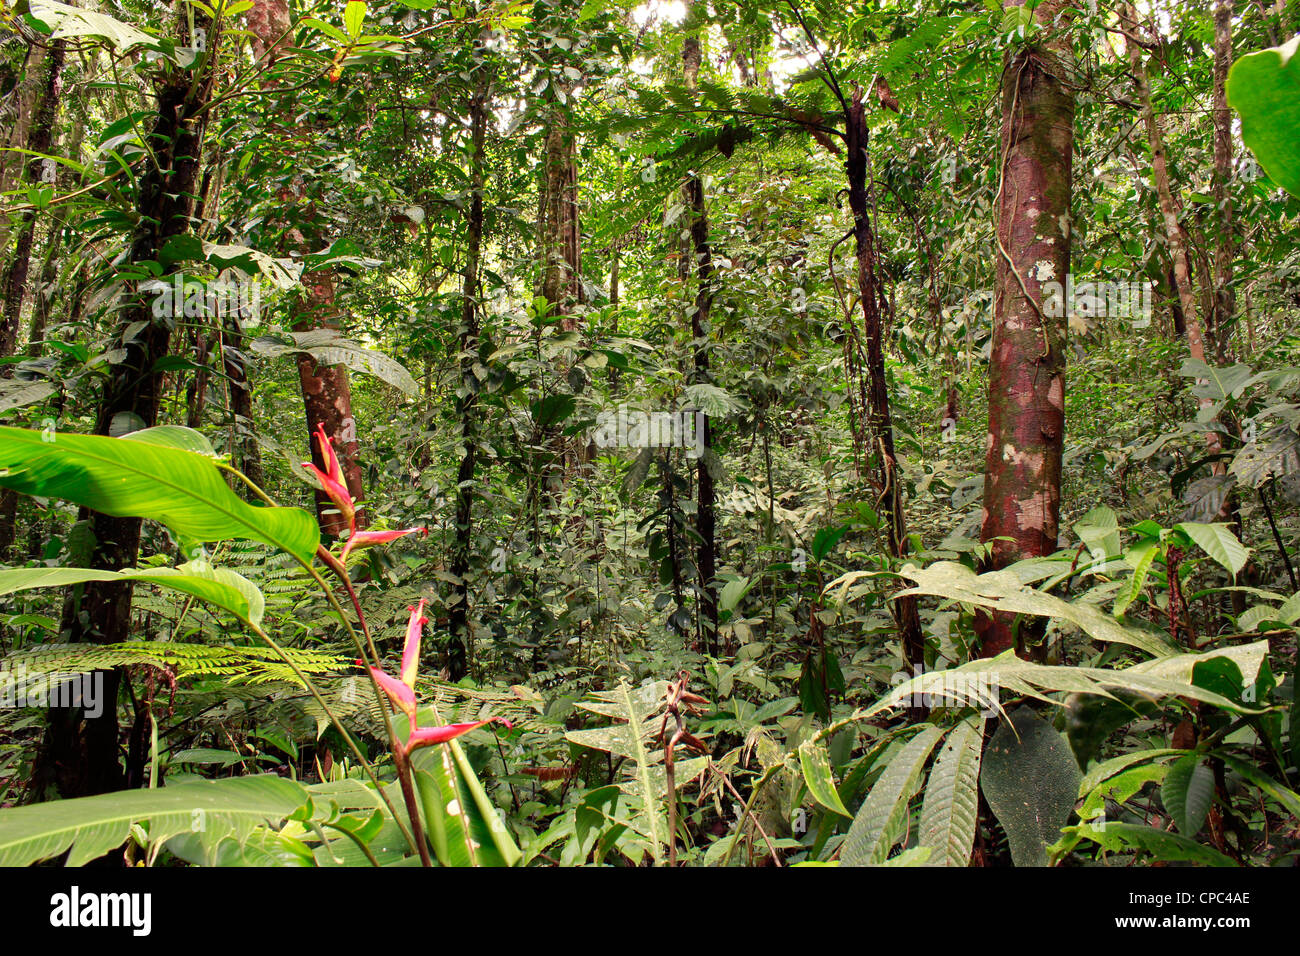 Innenraum des tropischen Regenwaldes mit einer Heliconia-Pflanze in Blüte Stockfoto